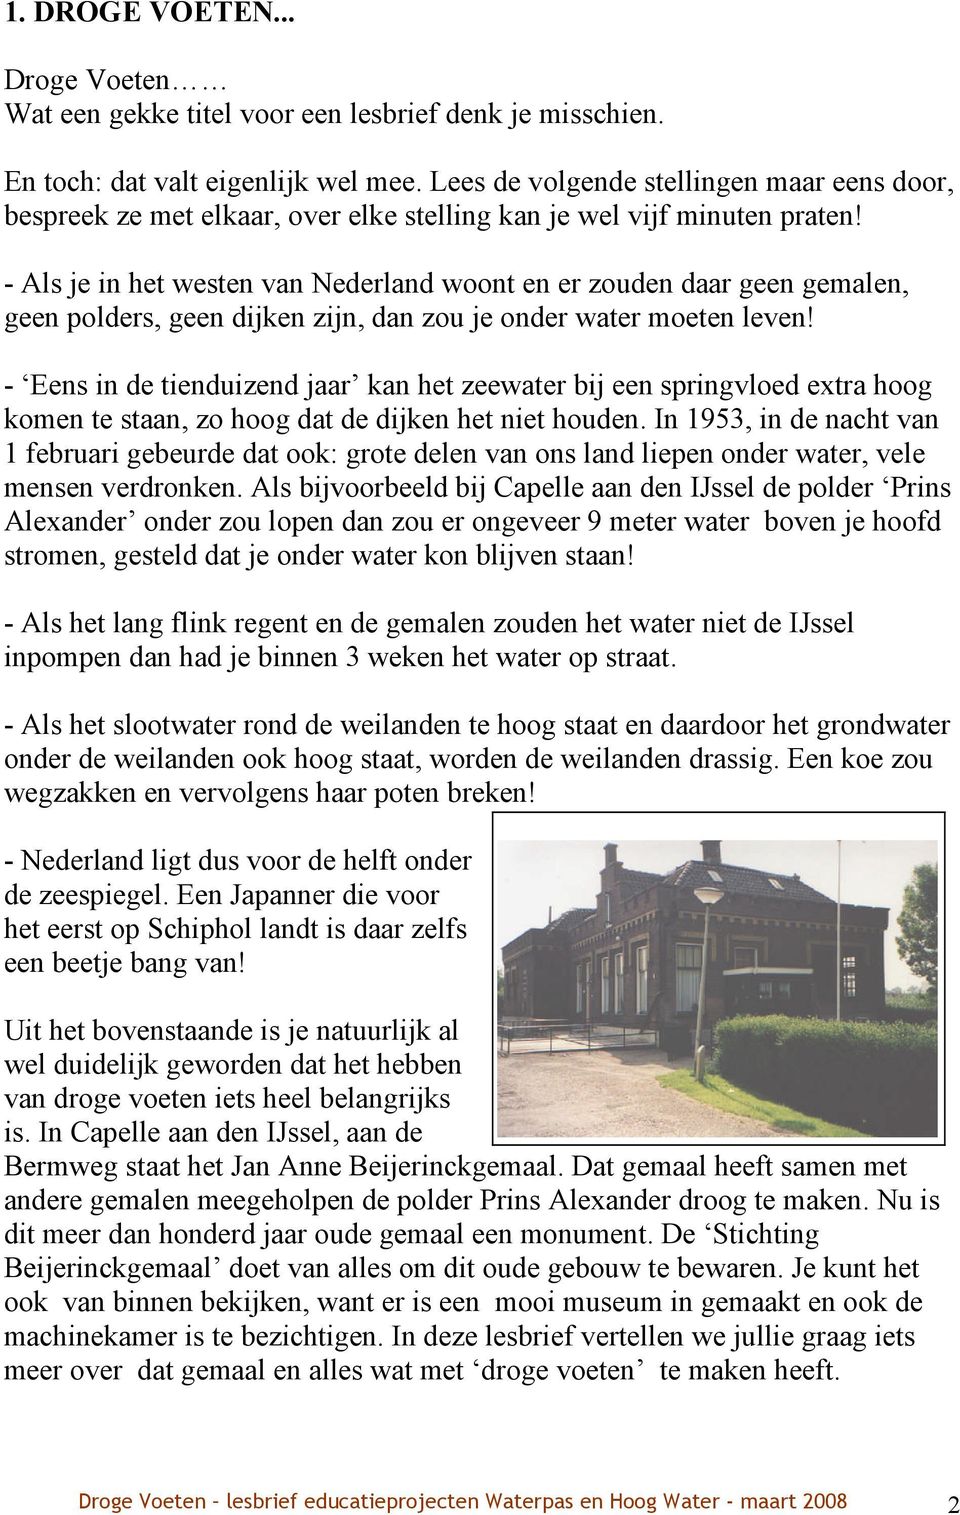 - Als je in het westen van Nederland woont en er zouden daar geen gemalen, geen polders, geen dijken zijn, dan zou je onder water moeten leven!